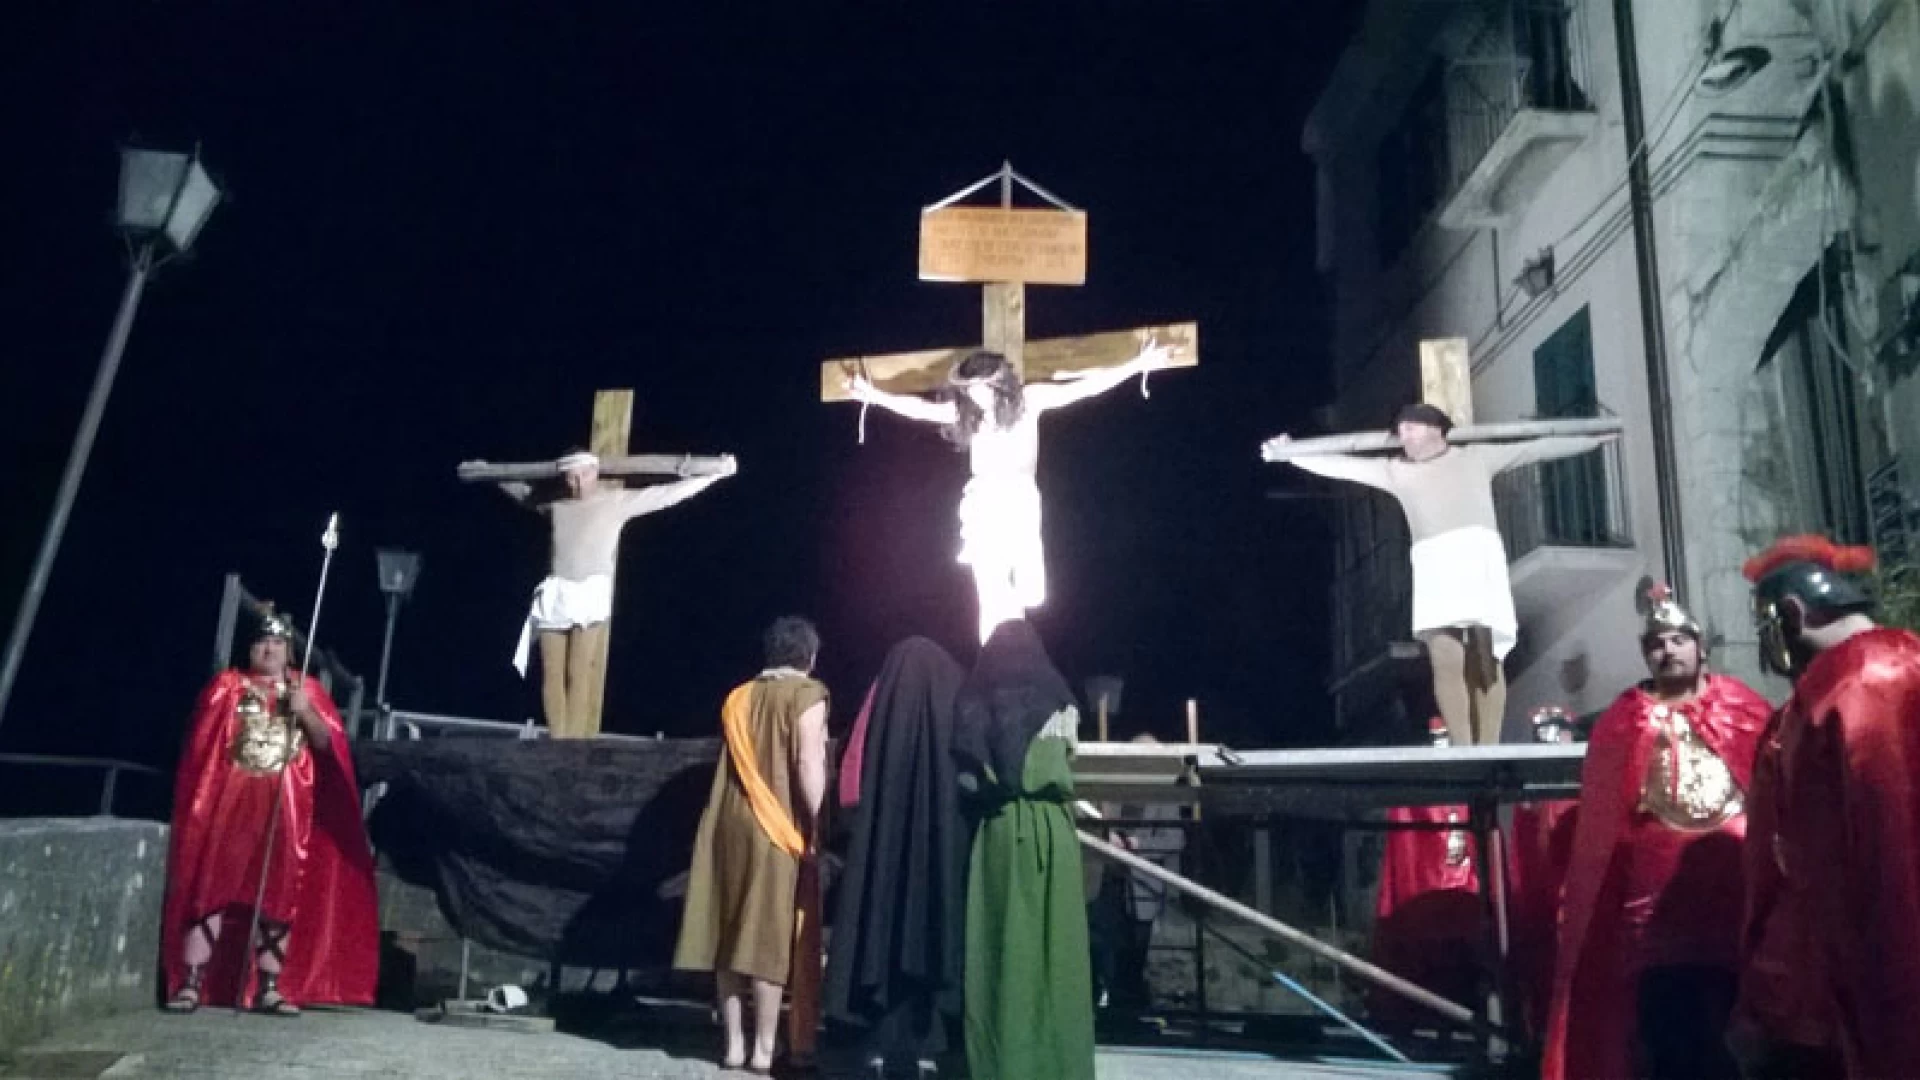 Colli a Volturno: sabato 19 marzo la seconda edizione della “Via Dolorosa”, la via crucis vivente del Cristo.